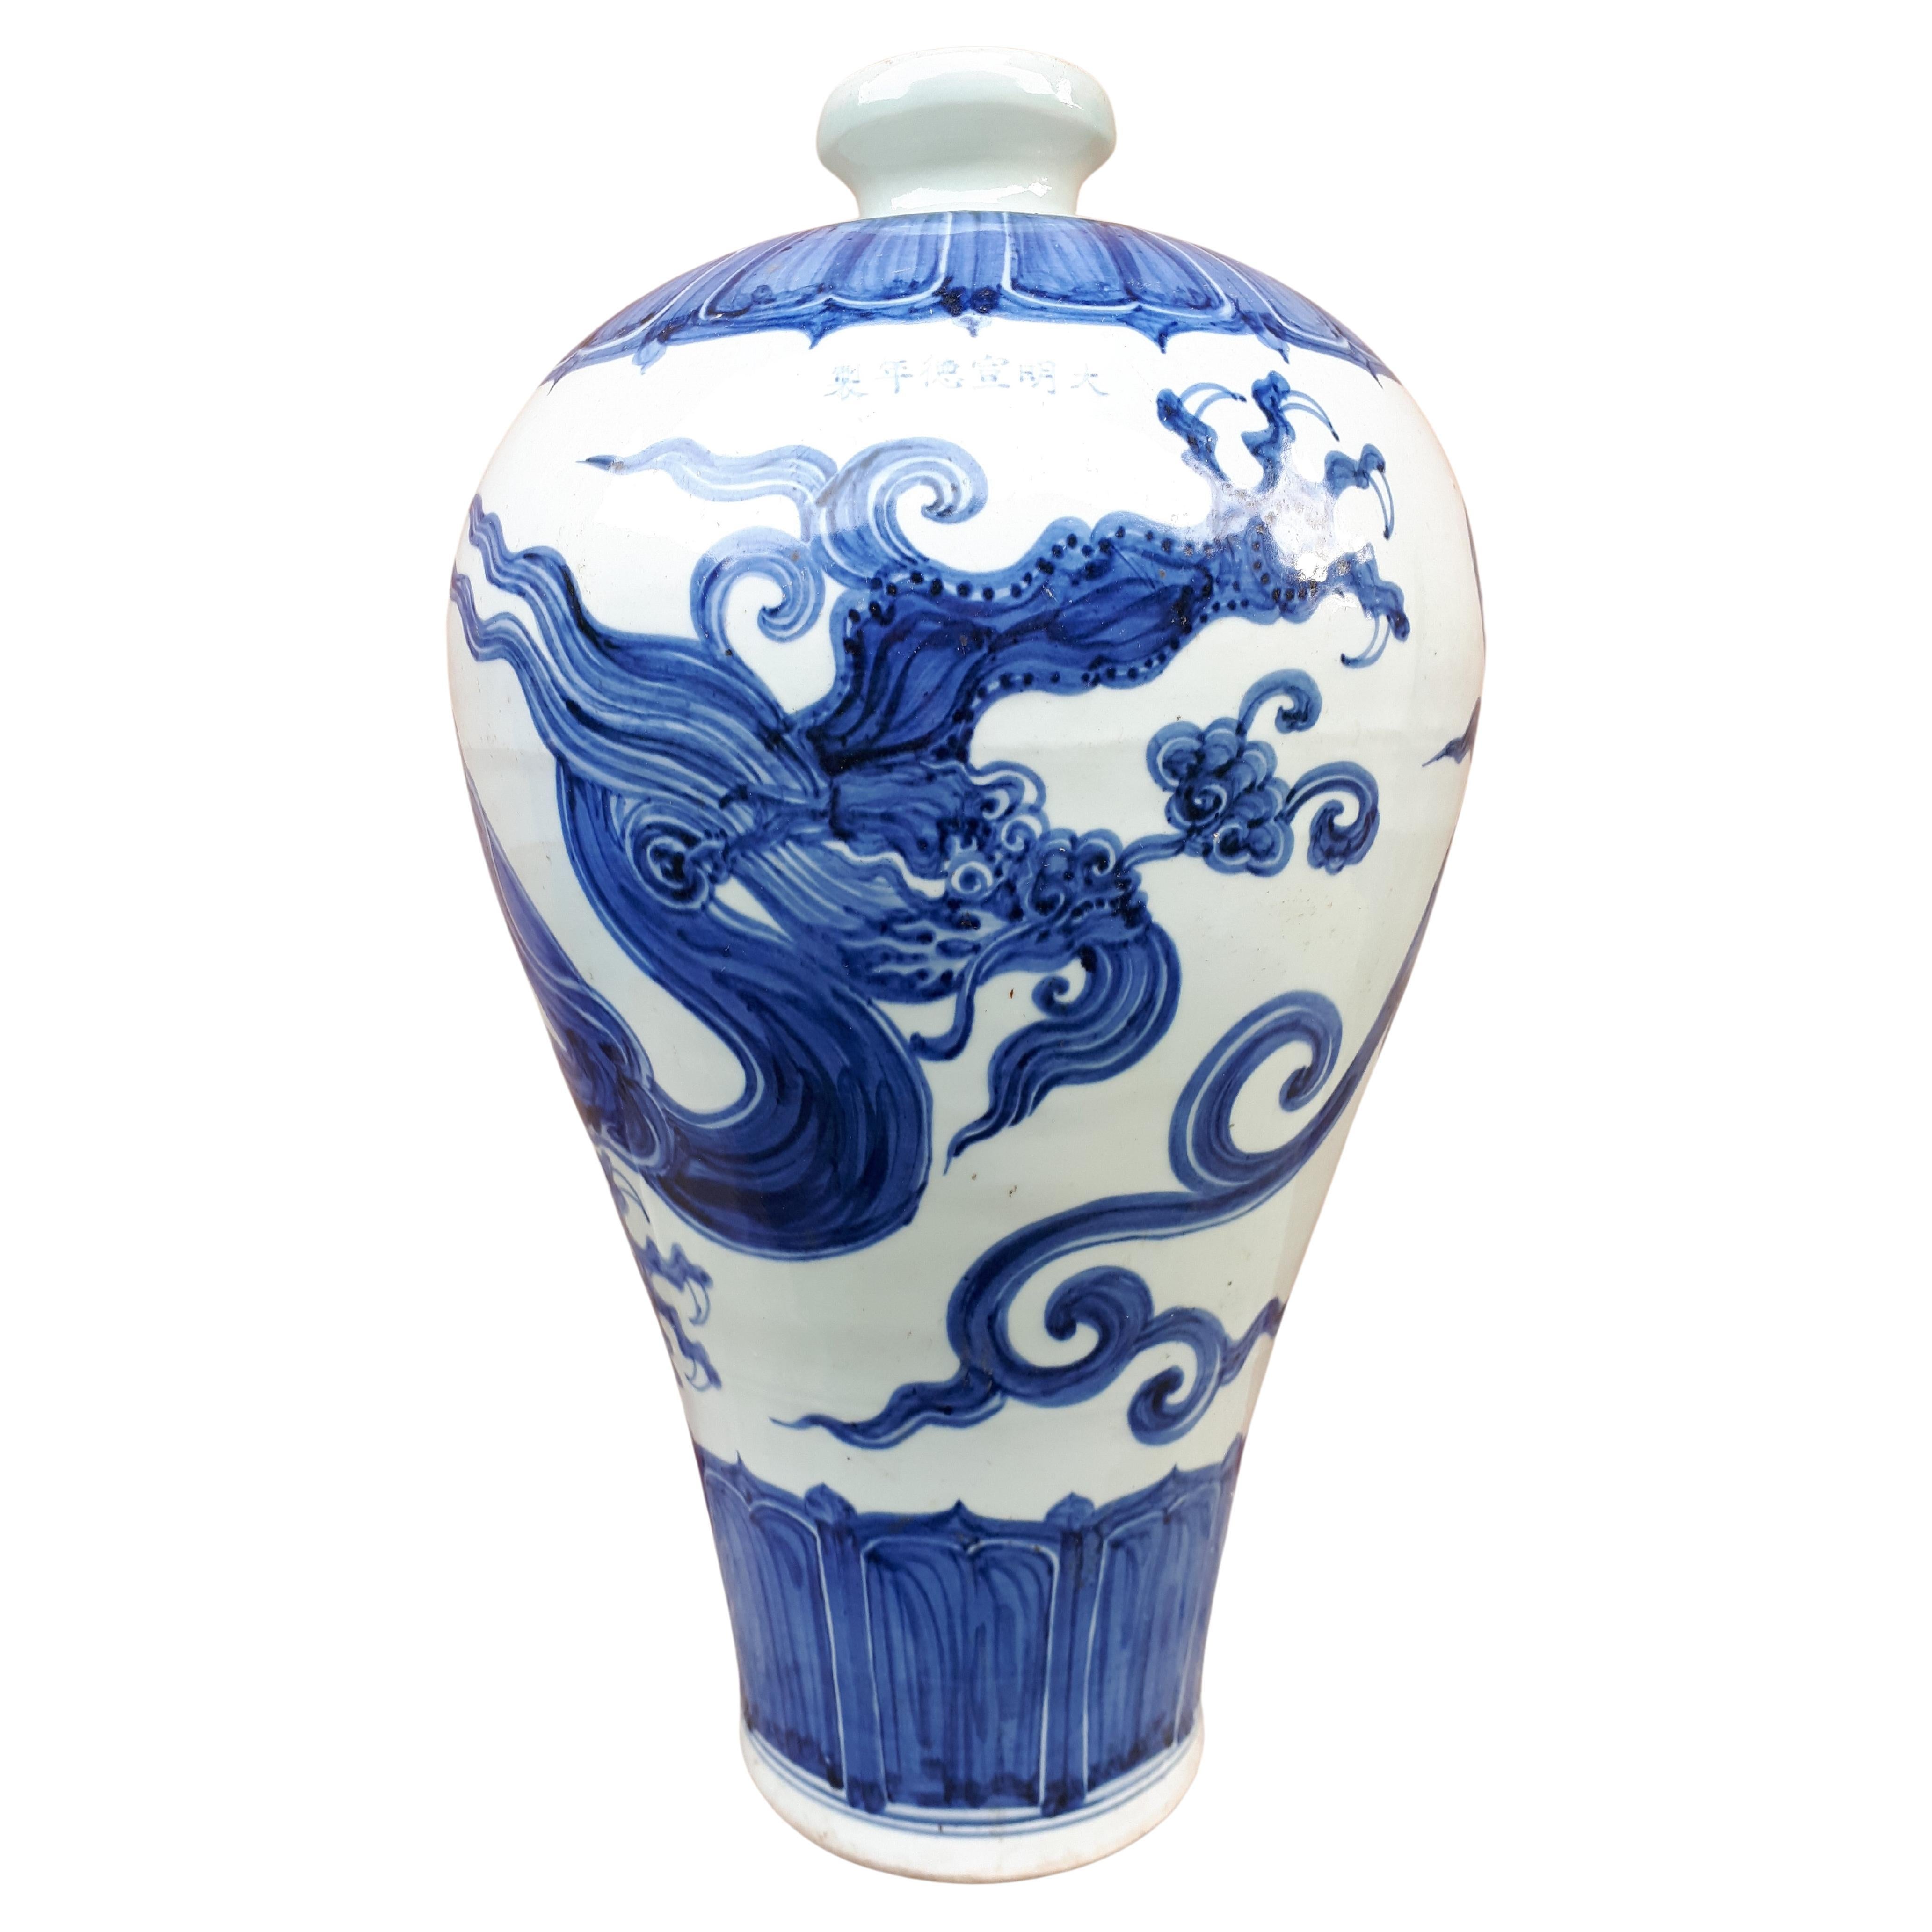 Grand vase chinois bleu et blanc de forme Meiping, Chine, fin de la dynastie Qing